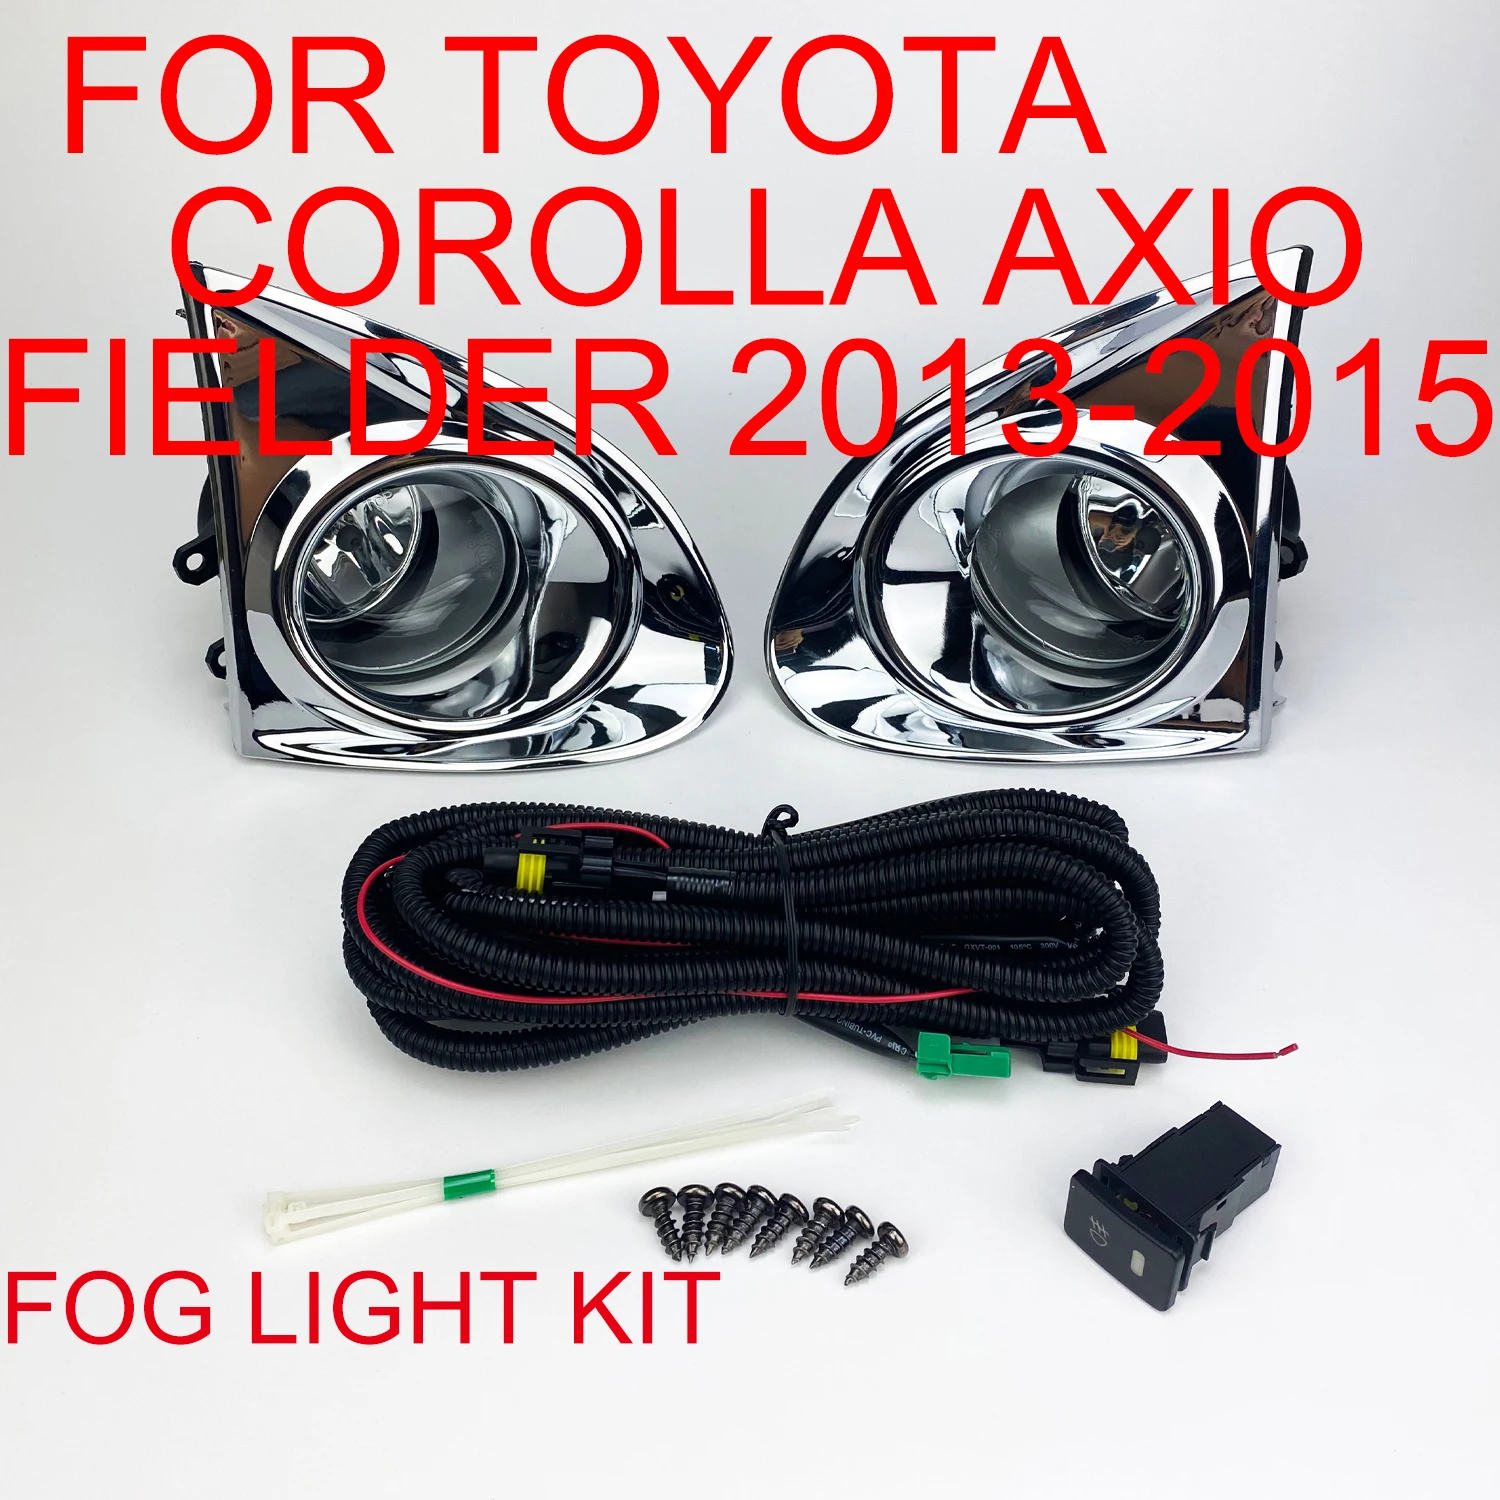 

Комплект противотуманных фар для переднего бампера Toyota Corolla Axio Fielder 2013 2014 2015, правая + левая сторона, прозрачная стеклянная линза H11, лампа